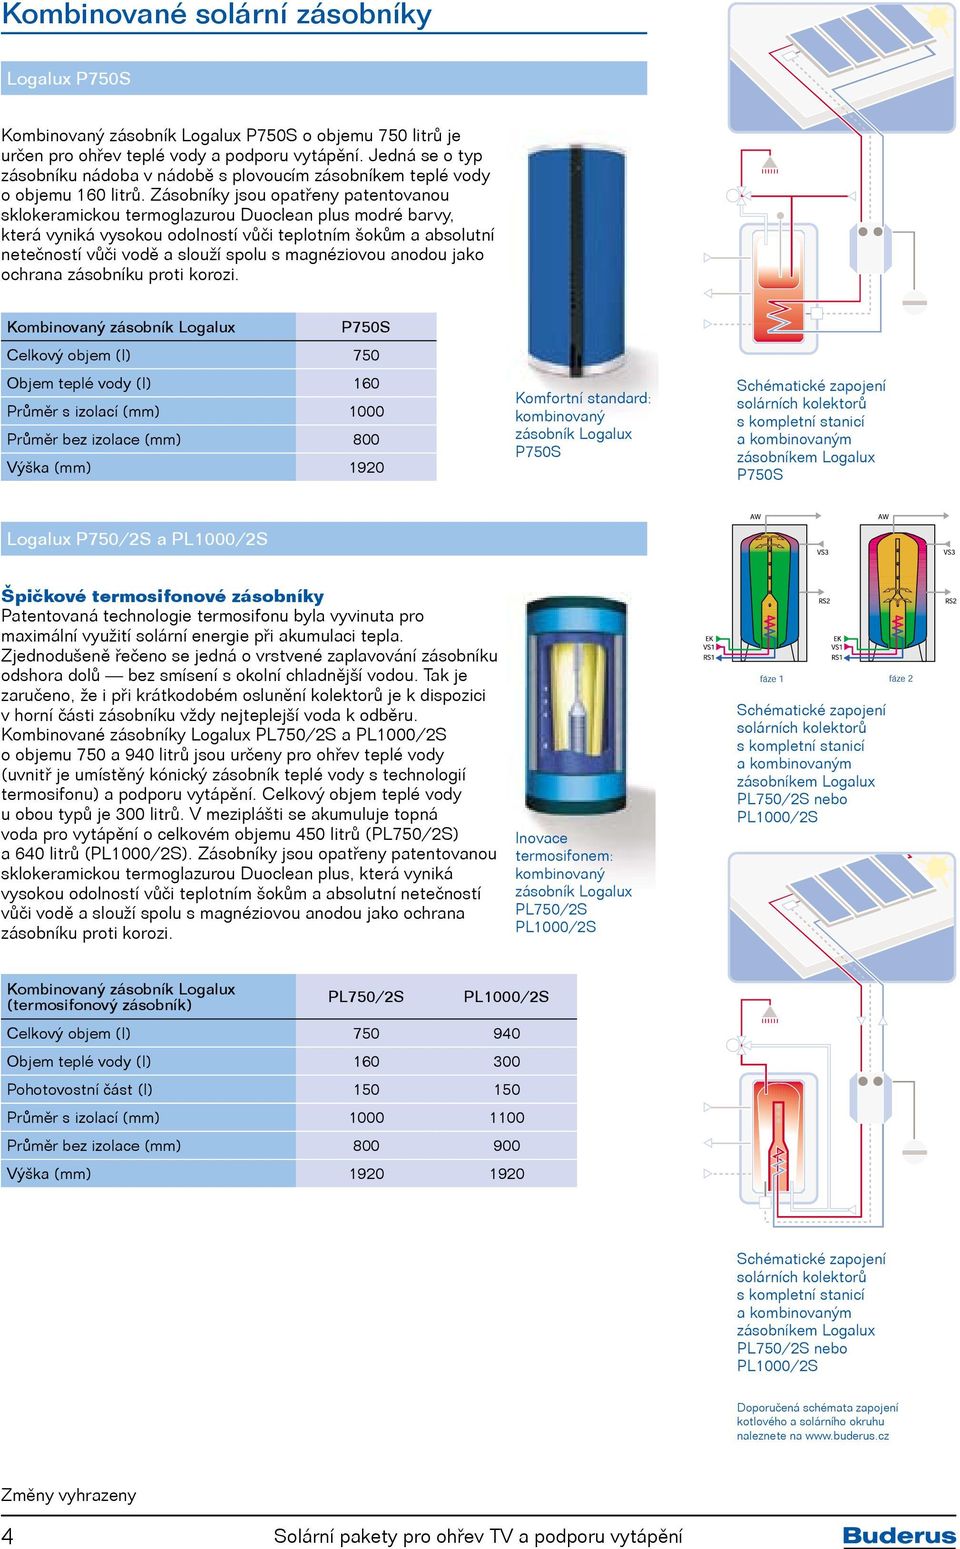 Zásobníky jsou opatřeny patentovanou sklokeramickou termoglazurou Duoclean plus modré barvy, která vyniká vysokou odolností vůči teplotním šokům a absolutní netečností vůči vodě a slouží spolu s